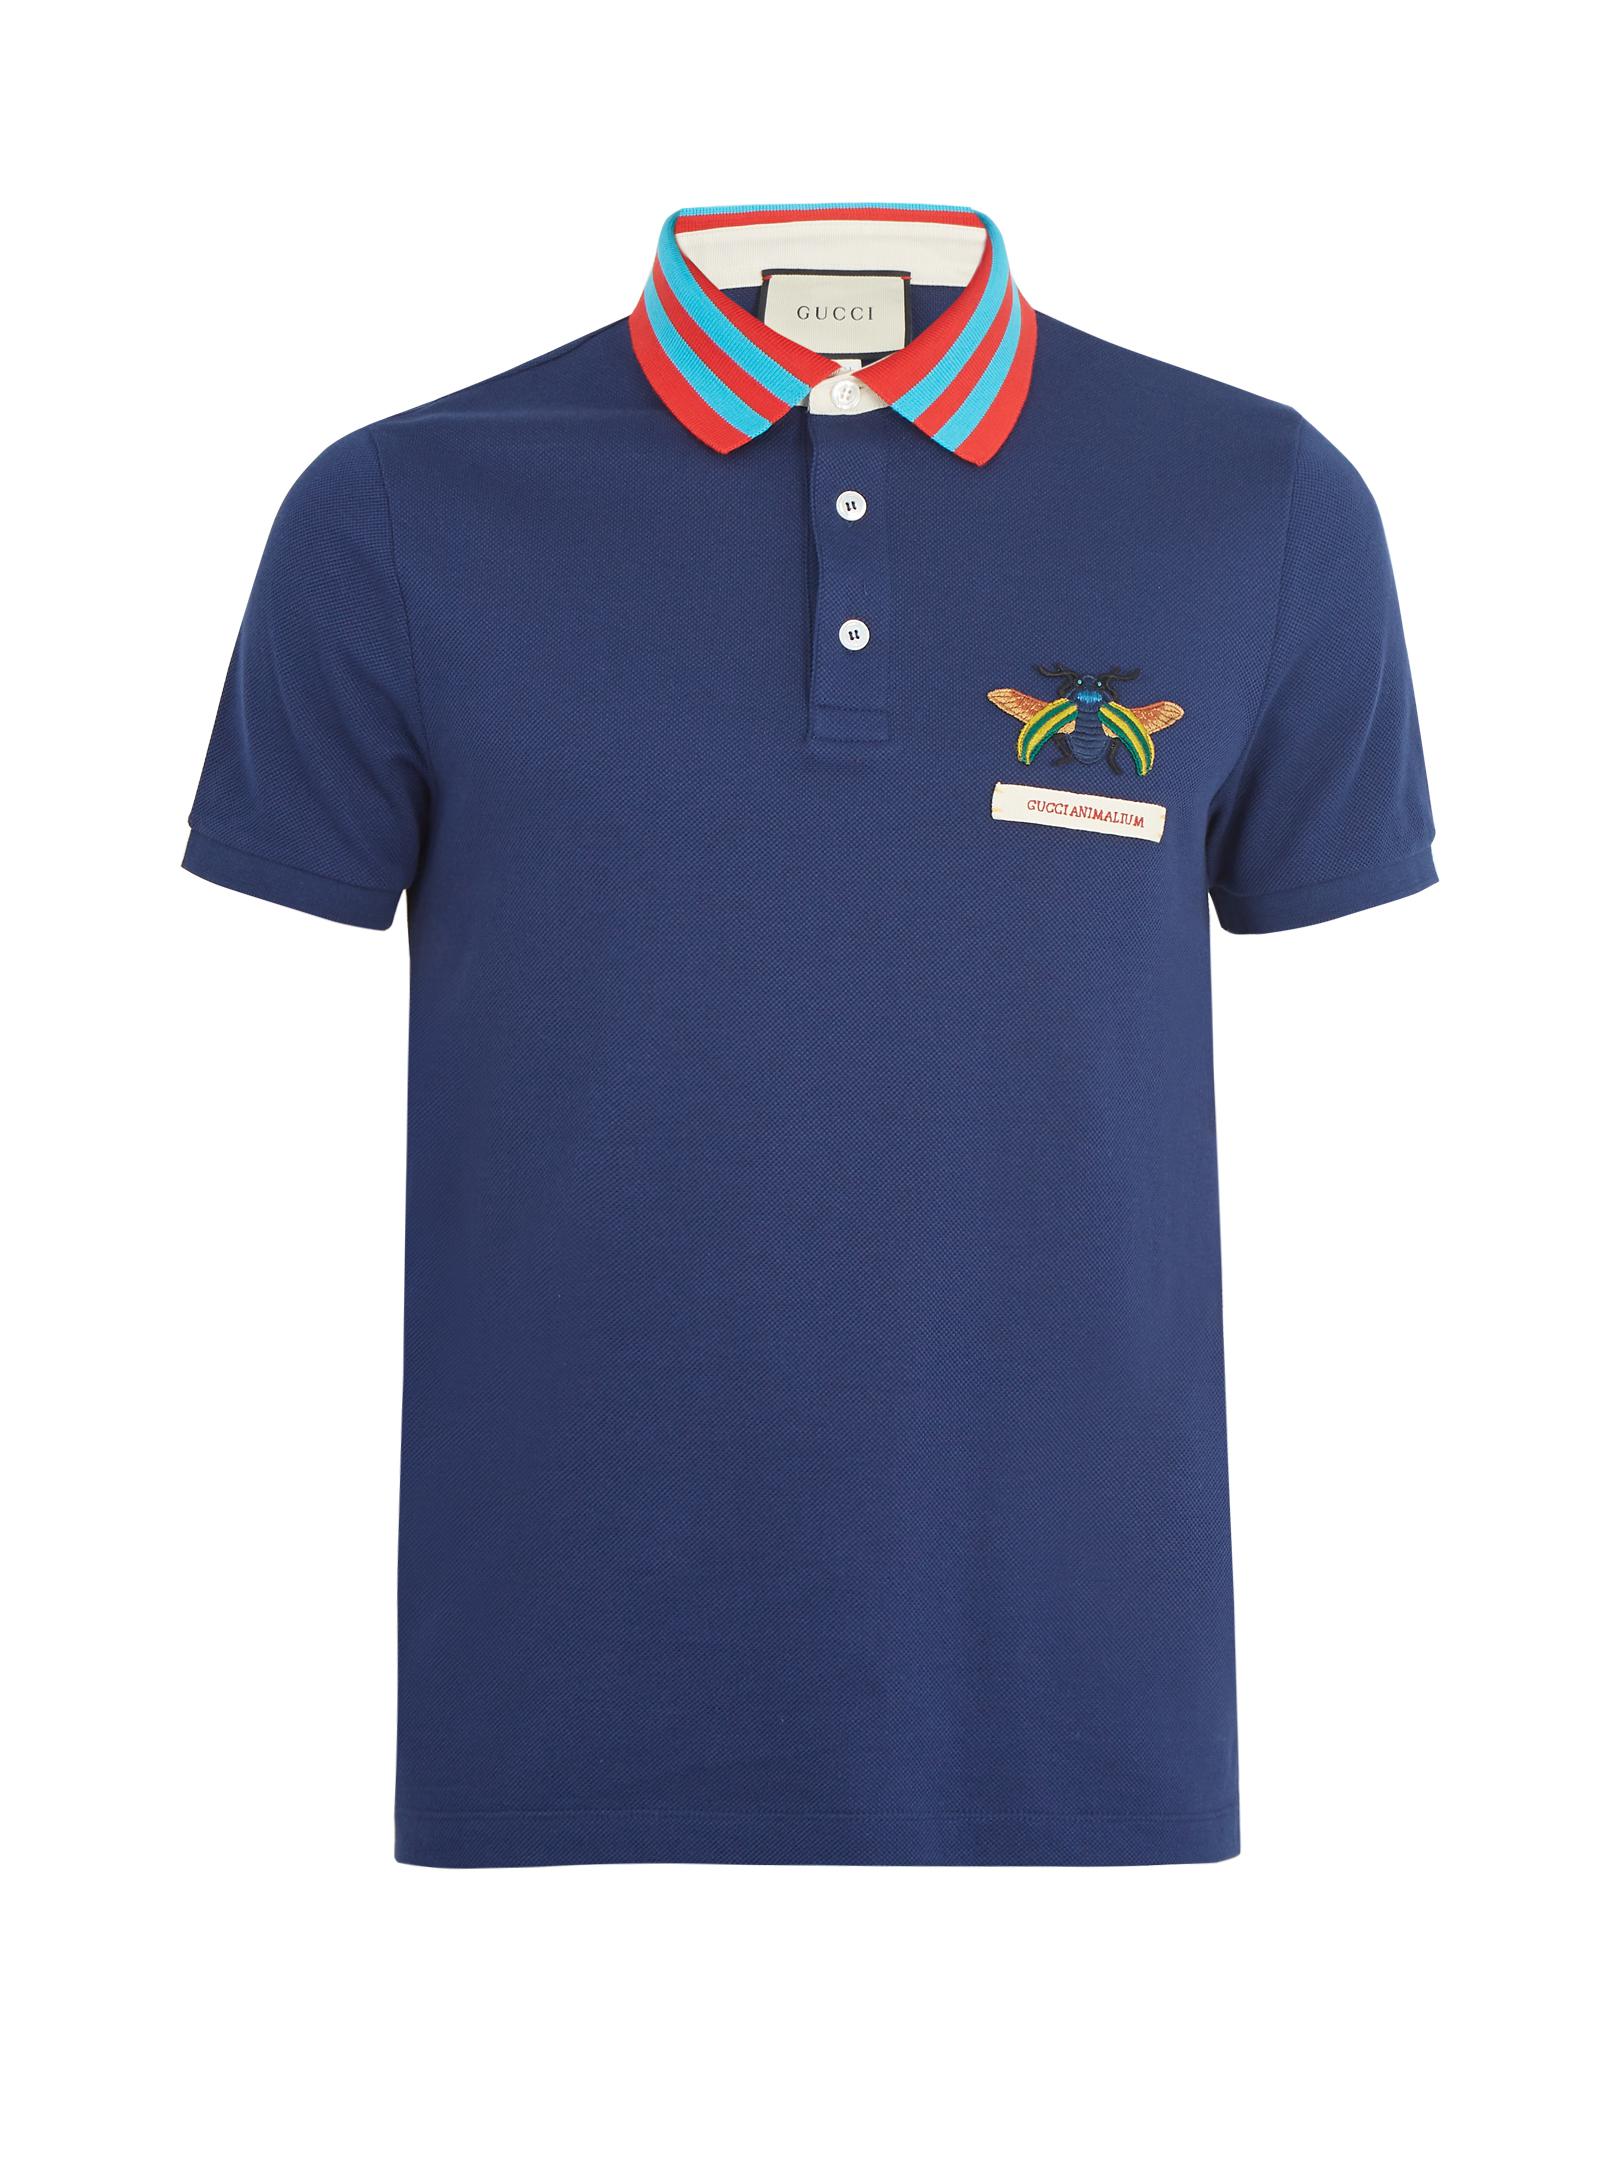 Gucci Beetle Appliqué Cotton Piqué Polo Shirt in Blue for Men - Lyst